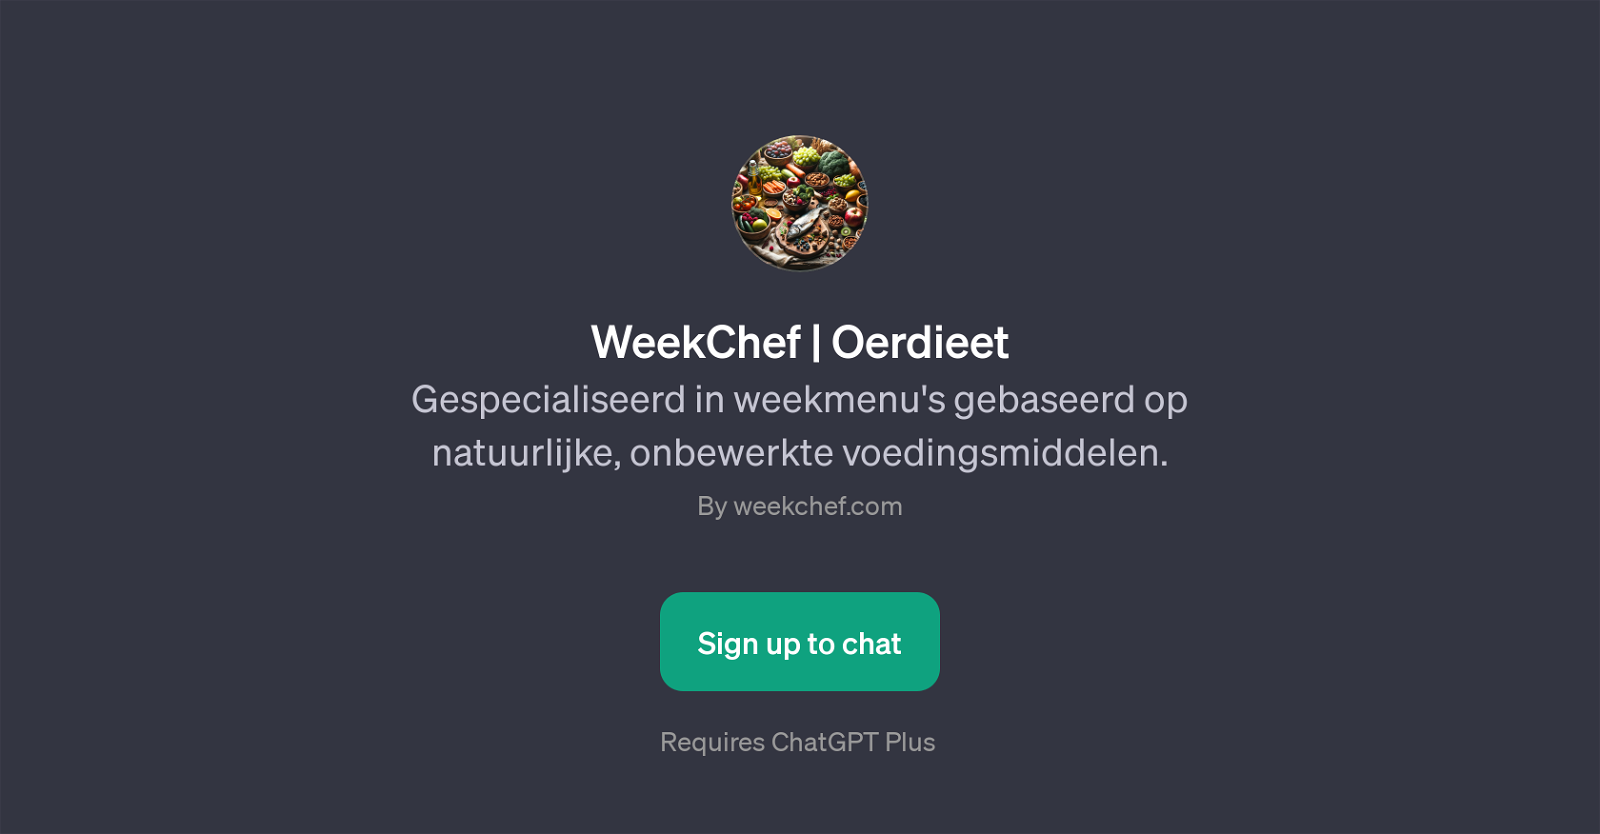 WeekChef | Oerdieet website